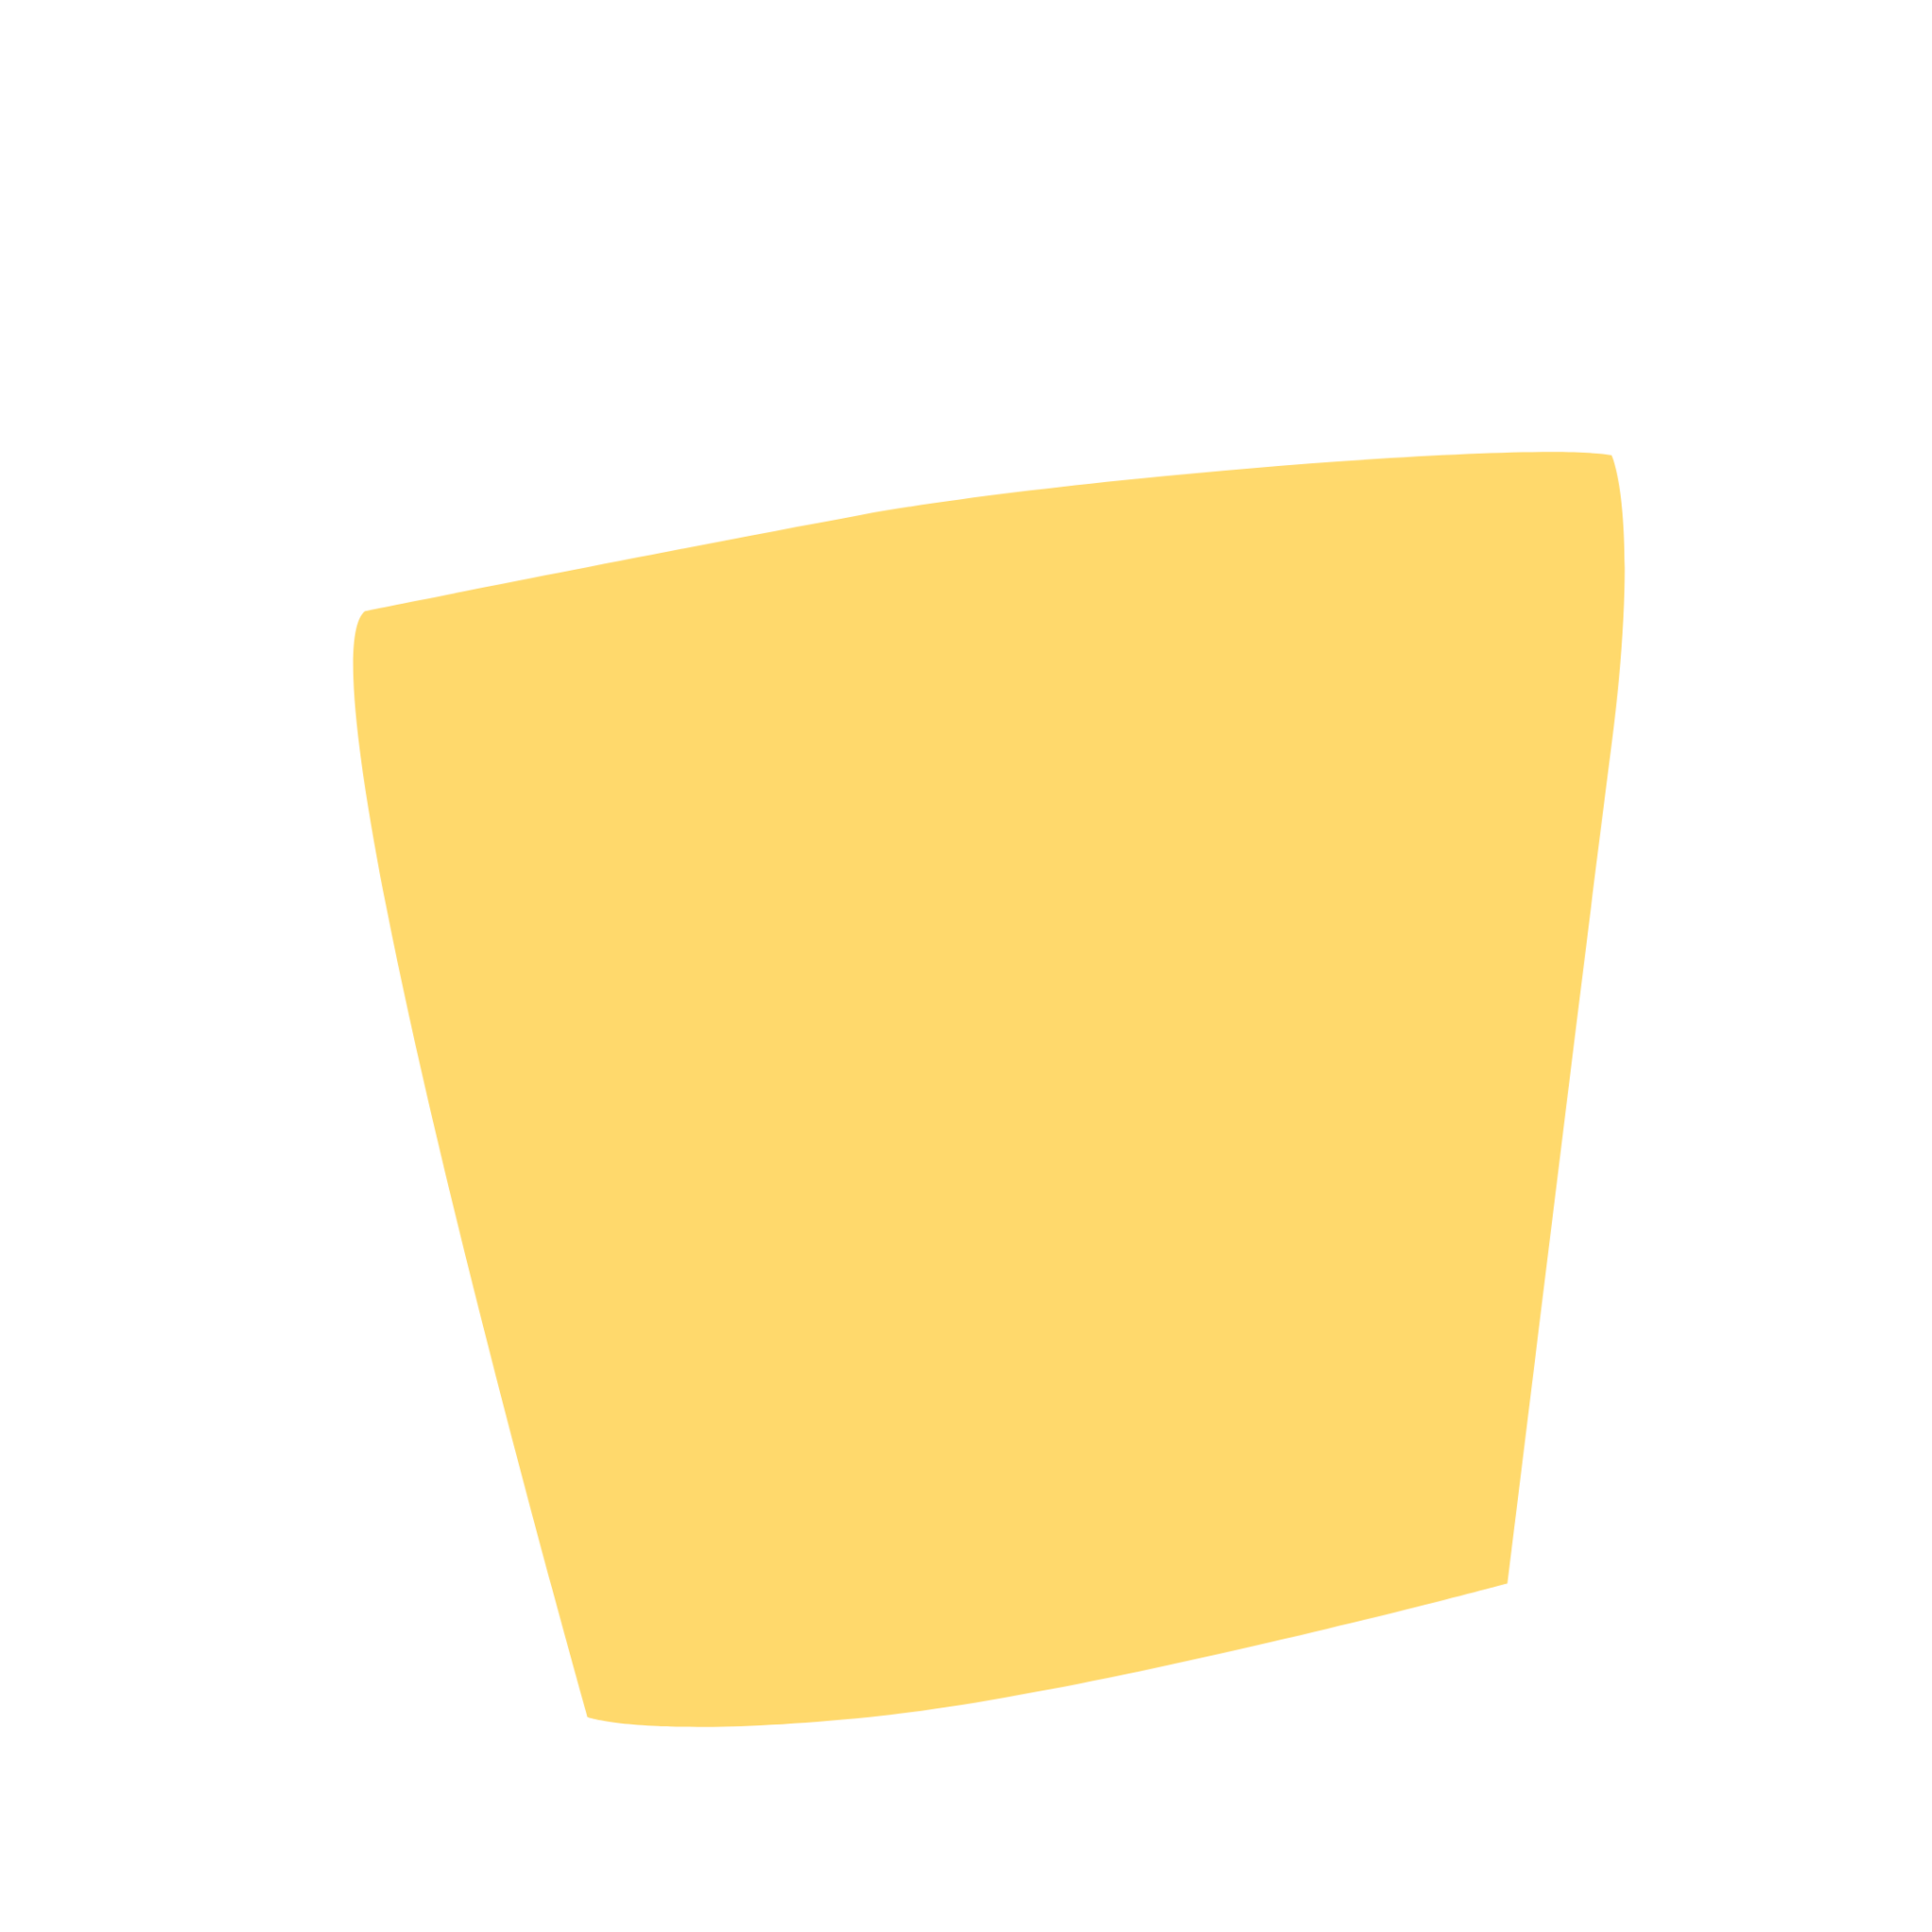 กล่องสีเหลือง